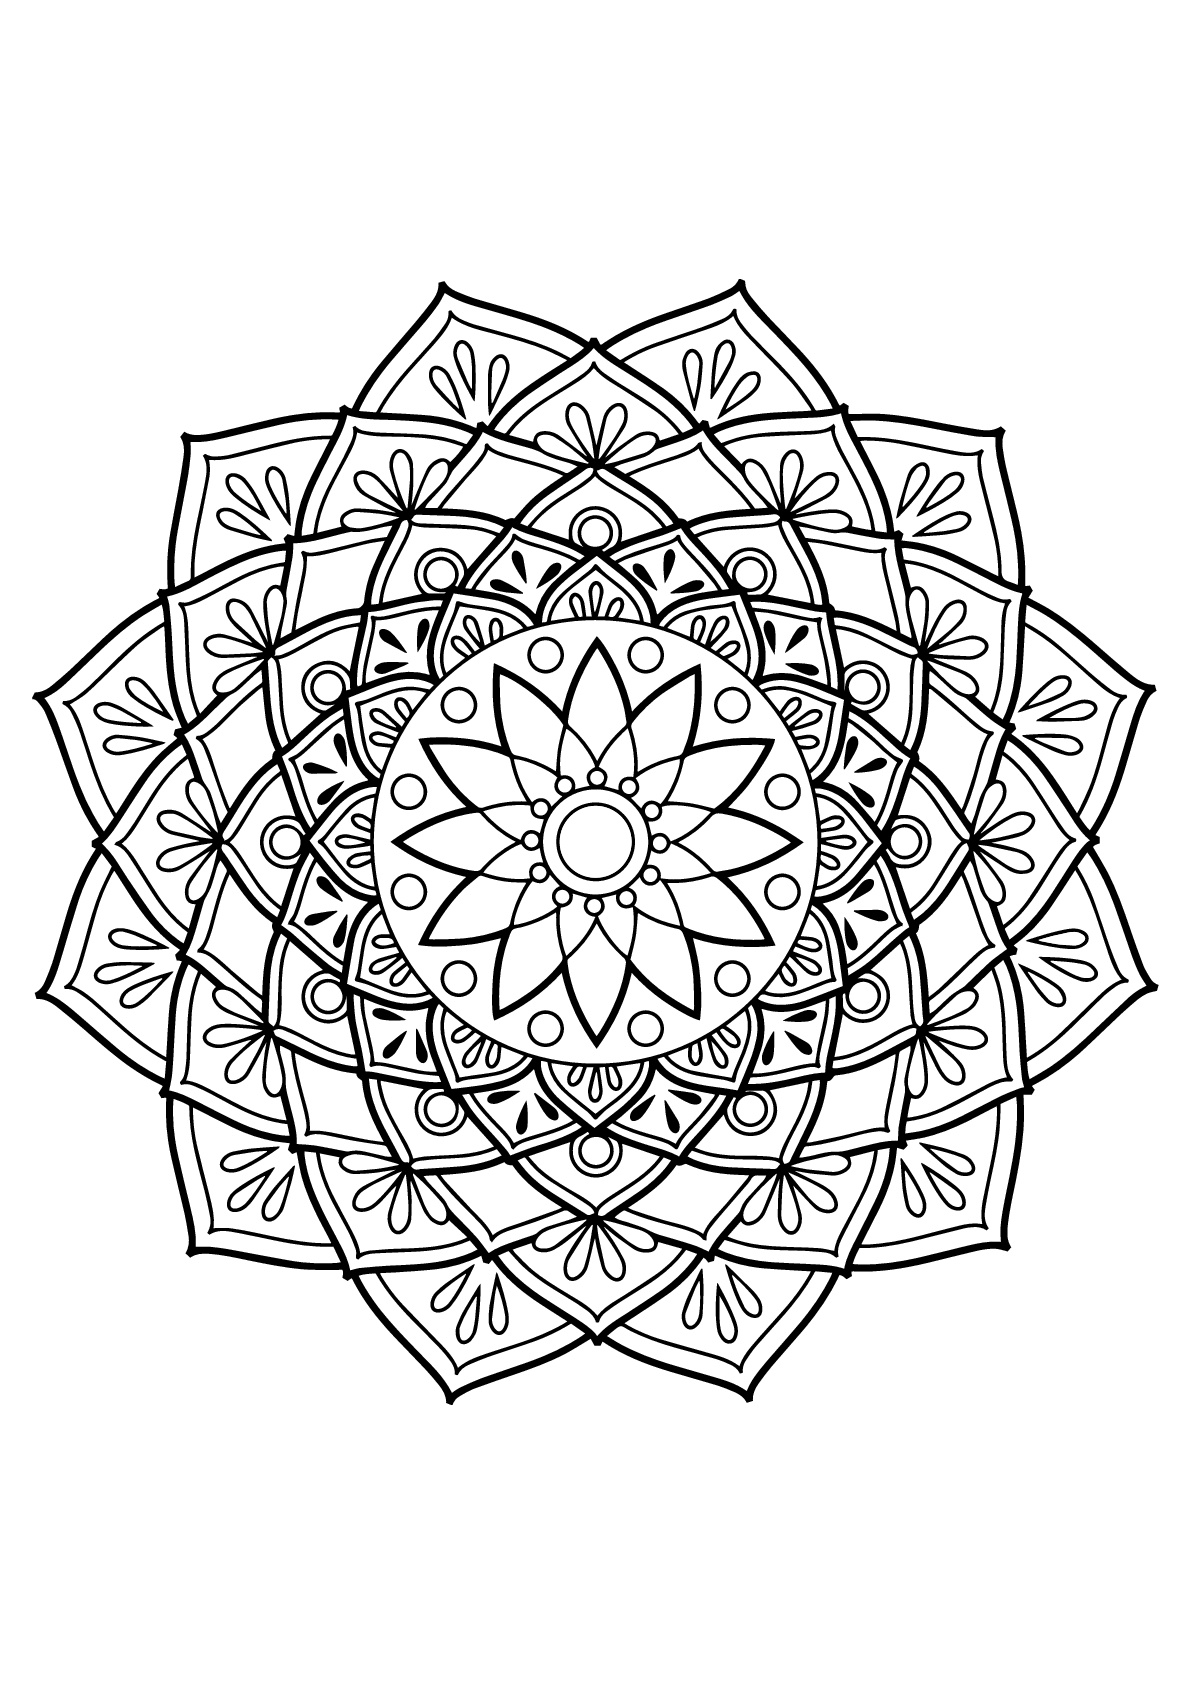 Mandala complexa de um livro de coloração livre